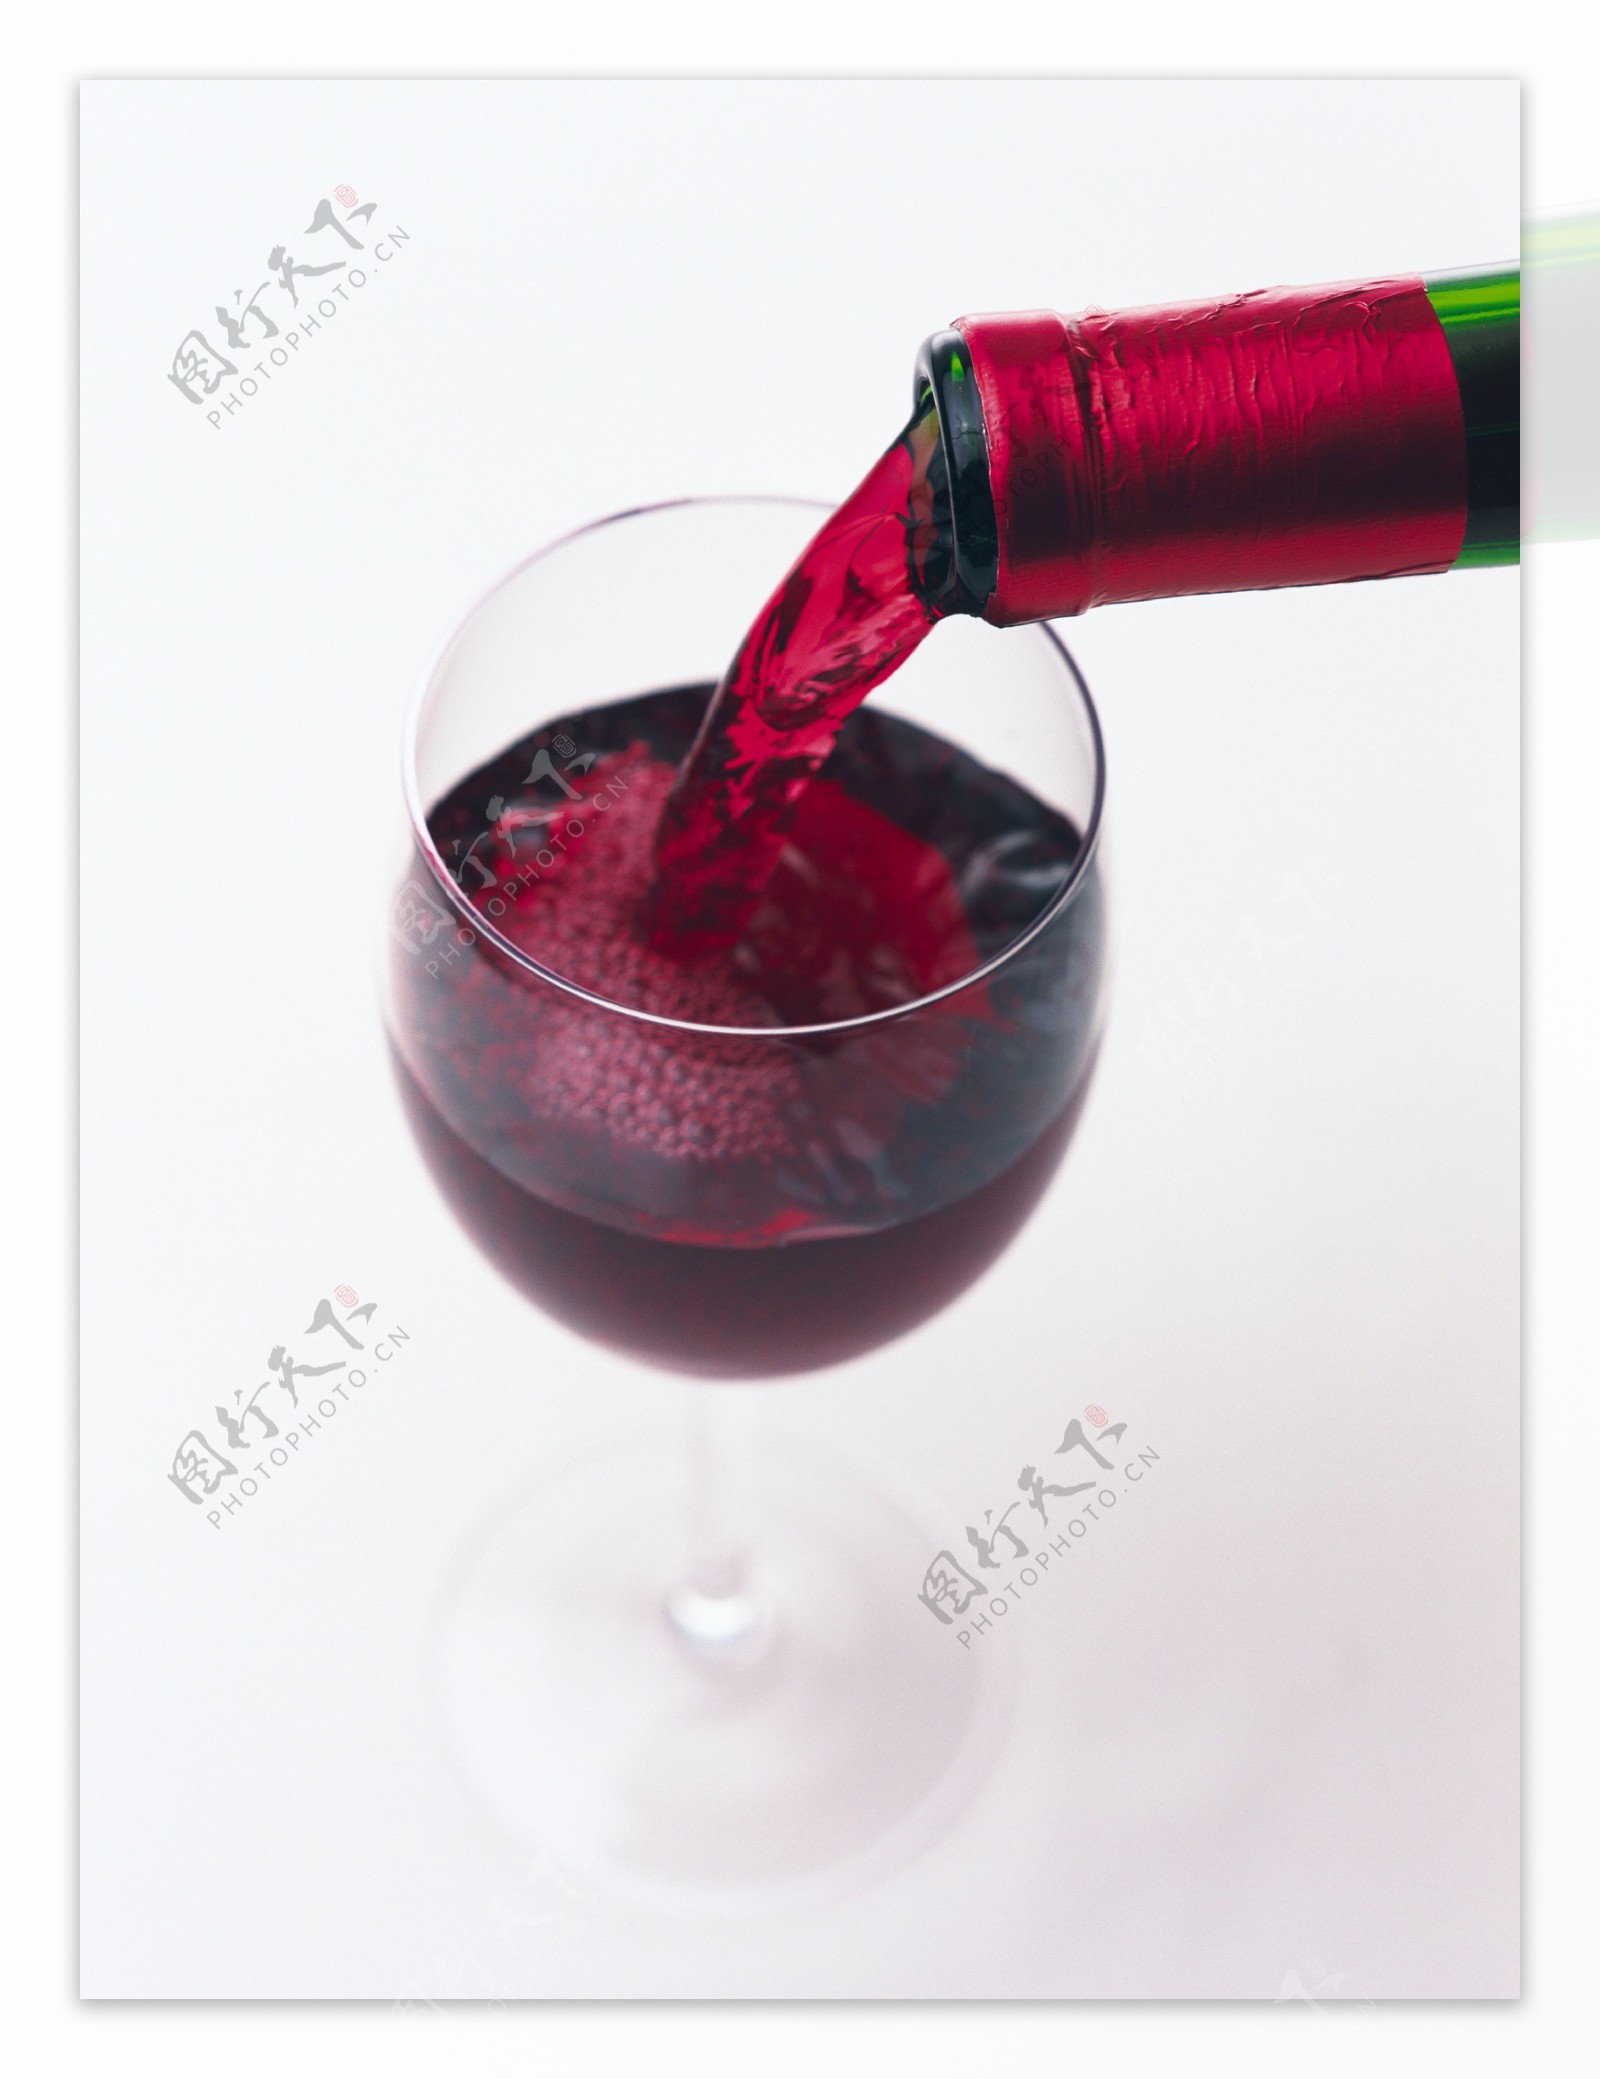 倒入杯中的红酒俯视图图片图片